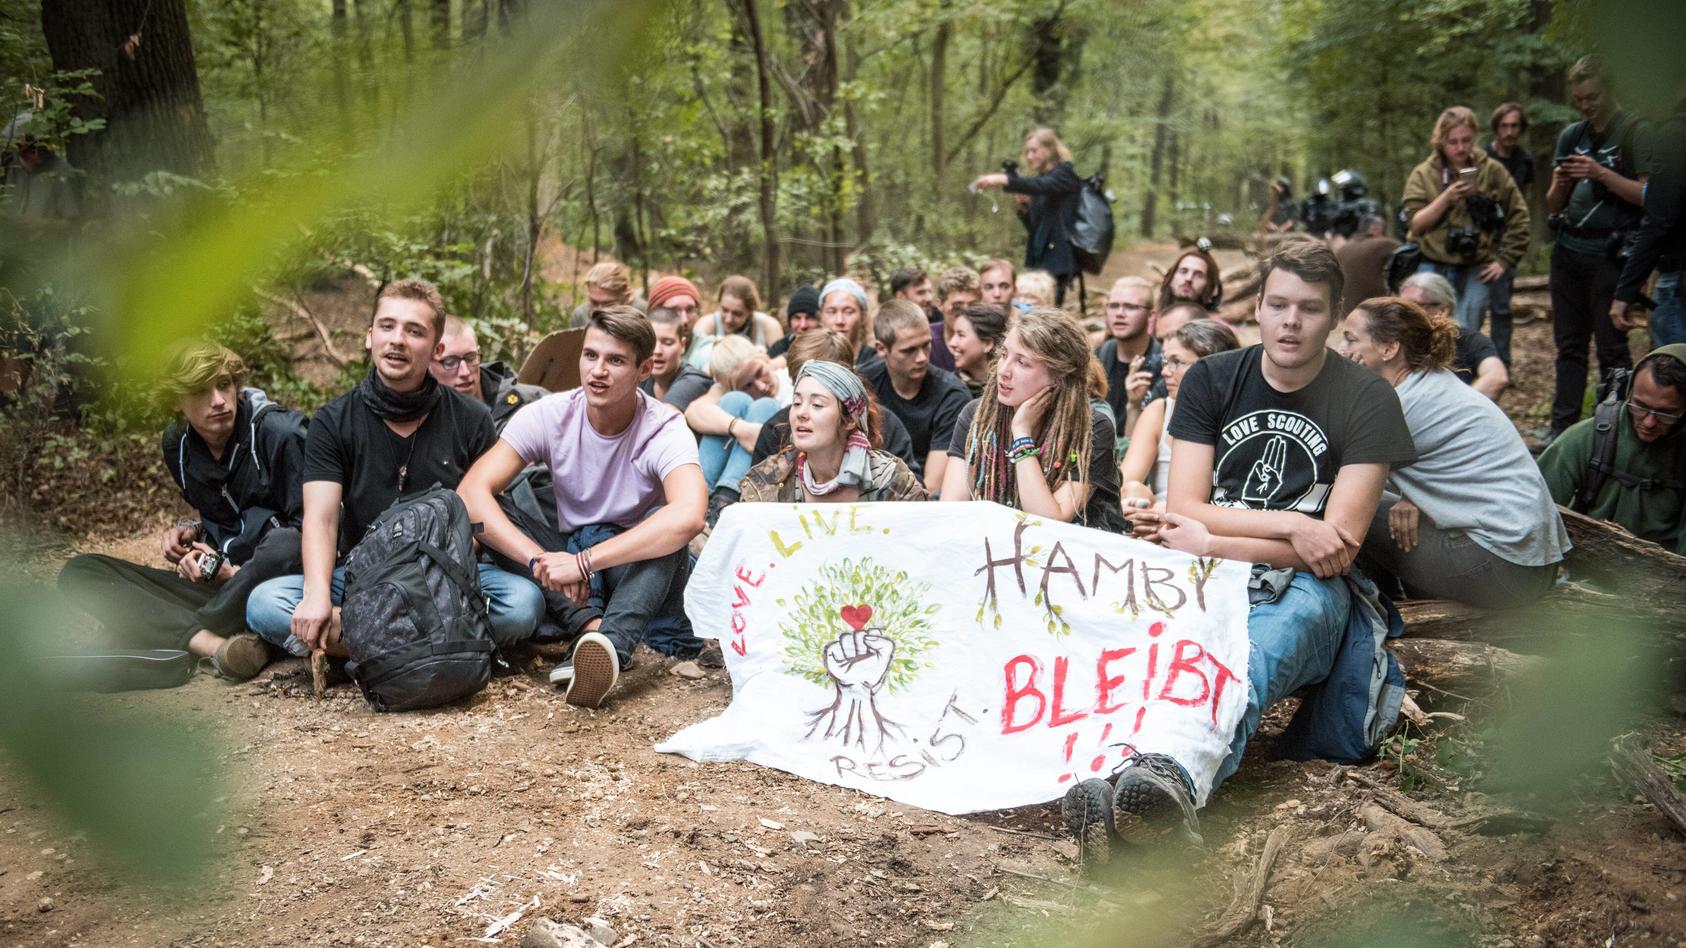 Waldspaziergang im Hambacher Forst & ziviler Ungehorsam Aktivisten mit Transparent Hambi bleibt b